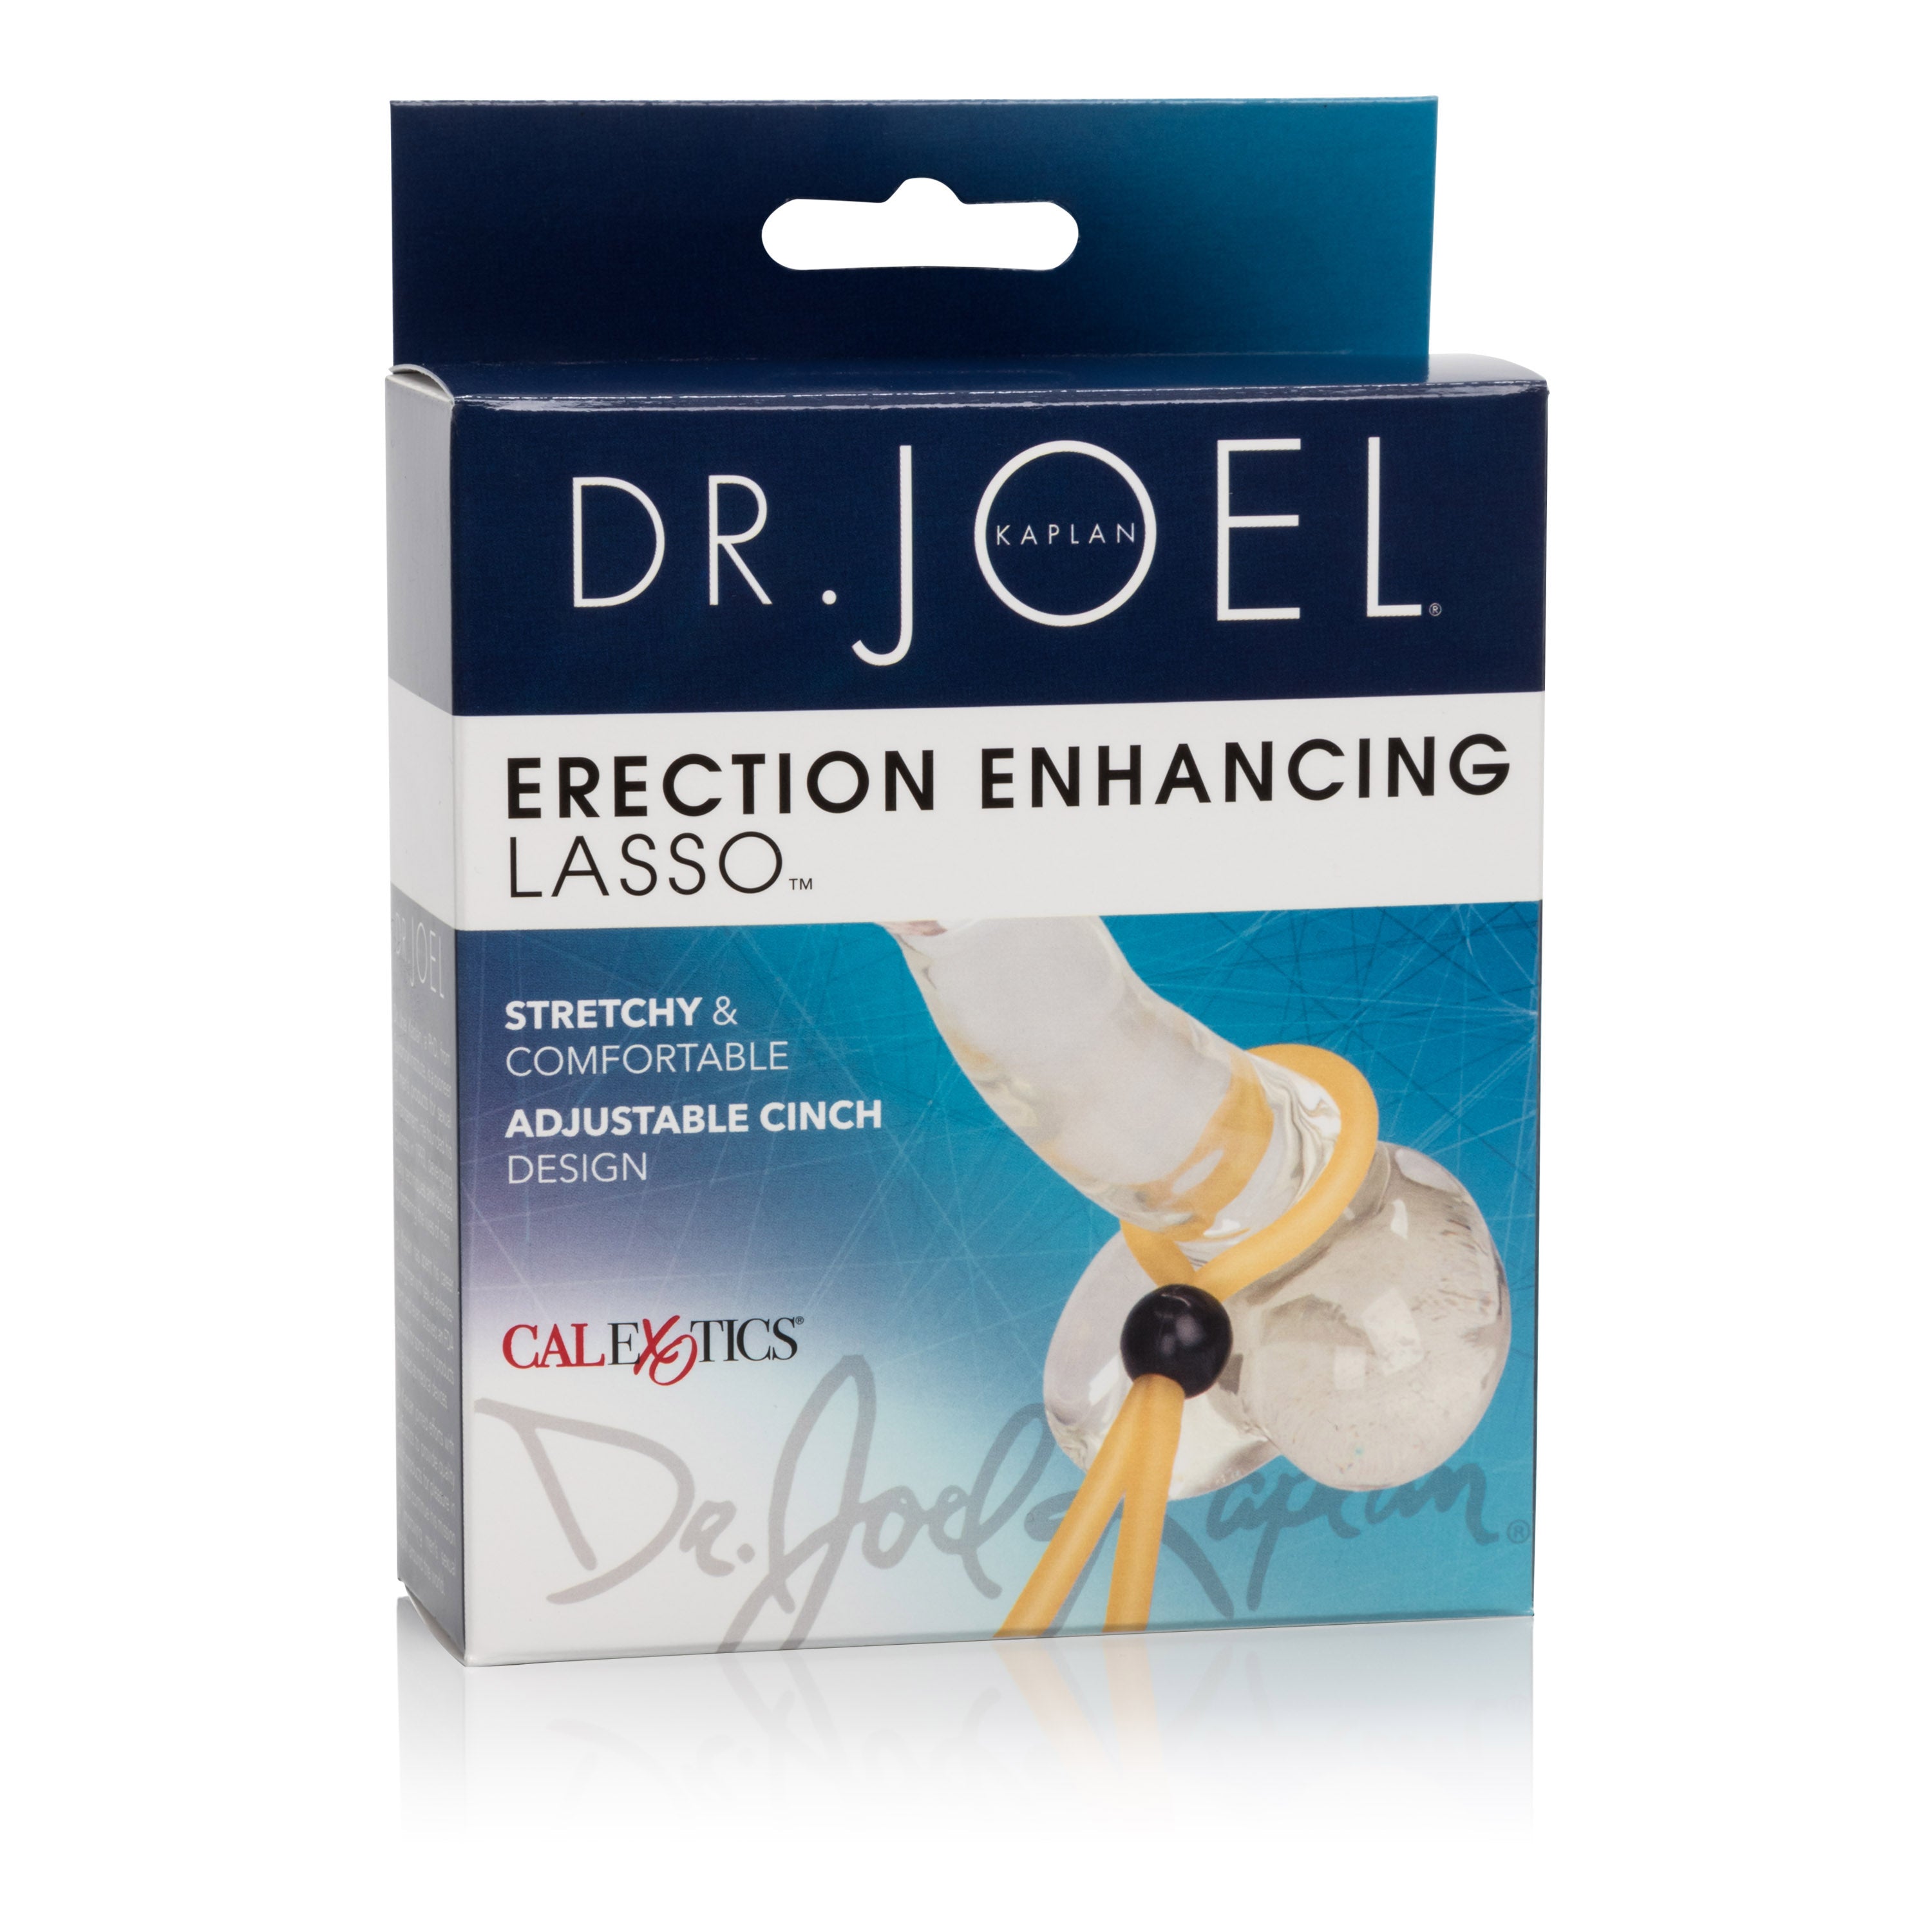 Dr. Joel's Flesh Adjustable Erection Enhancer Lasso - Surgical Grade Latex